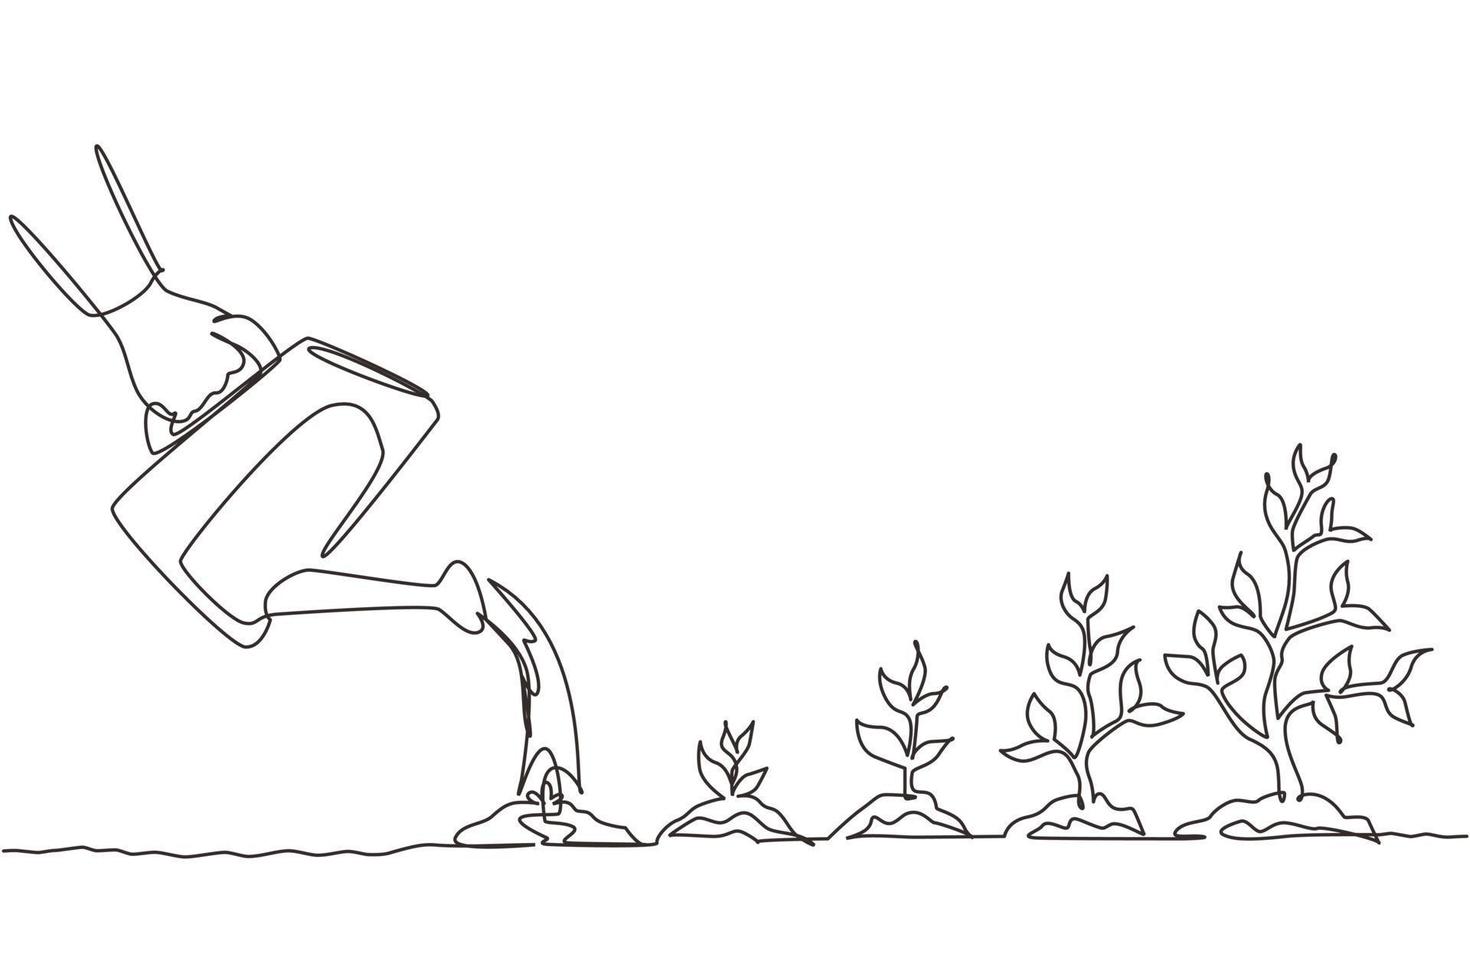 mão de desenho de linha contínua única com planta de rega de lata no jardim. dia da terra salvar o conceito de ambiente. plantio de mudas florestais em crescimento. ilustração em vetor design gráfico de desenho gráfico de uma linha dinâmica